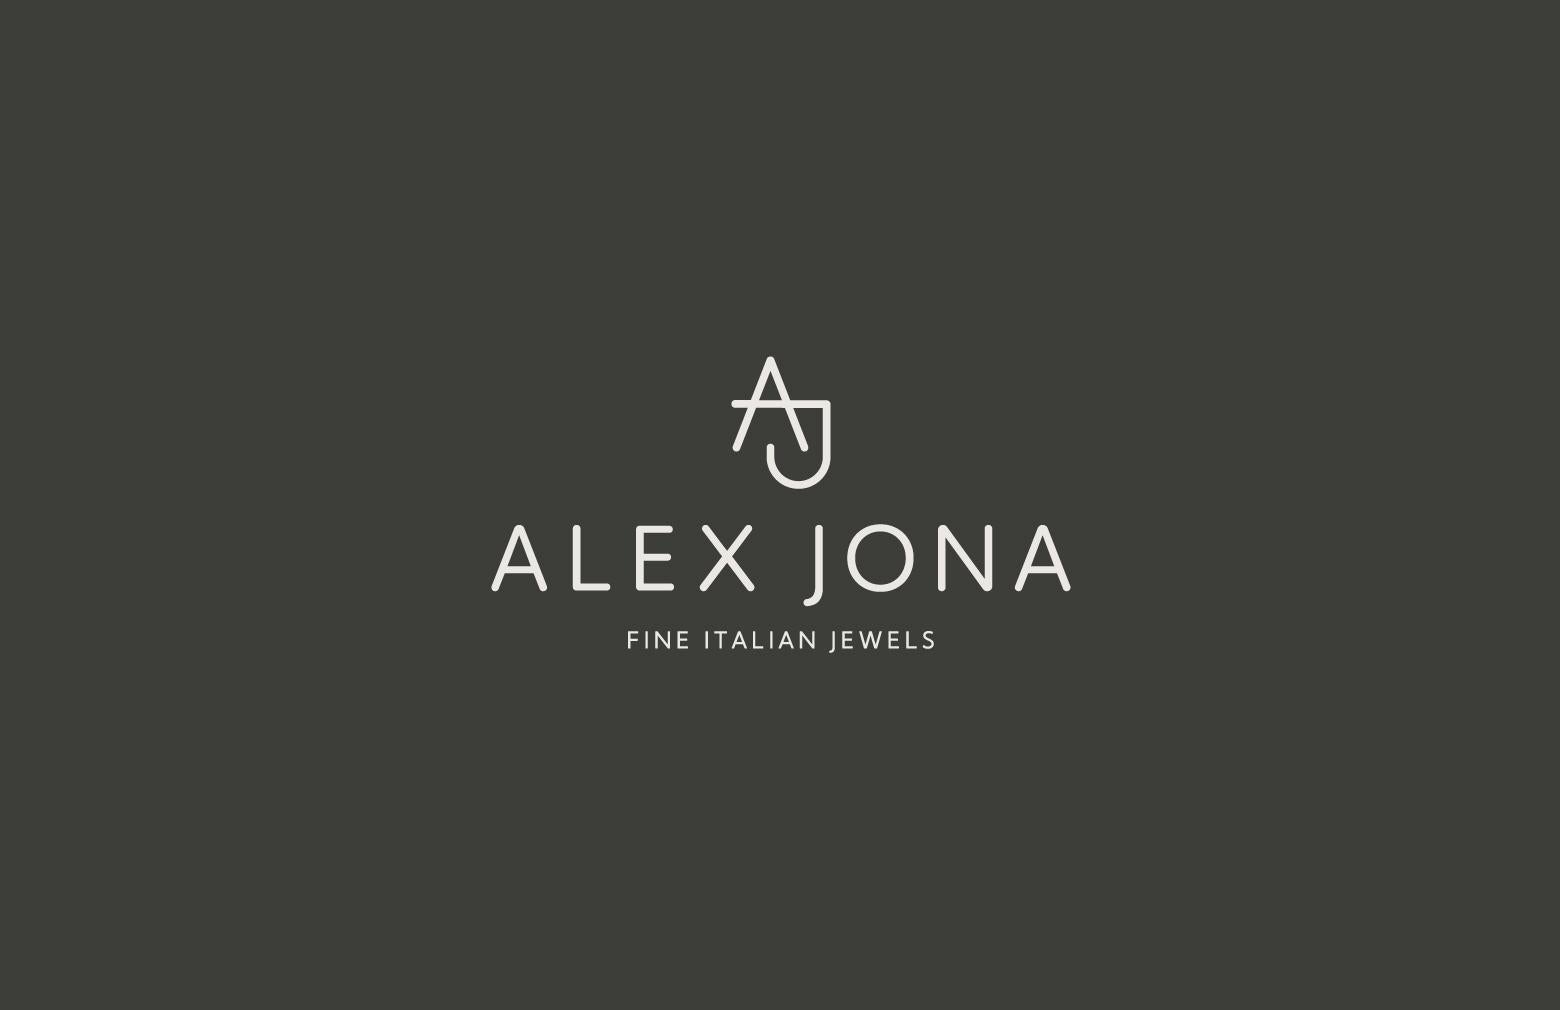 Alex Jona Lapis Lazuli Chalcedony 18k White Gold Prism Bar Cufflinks For Sale 4